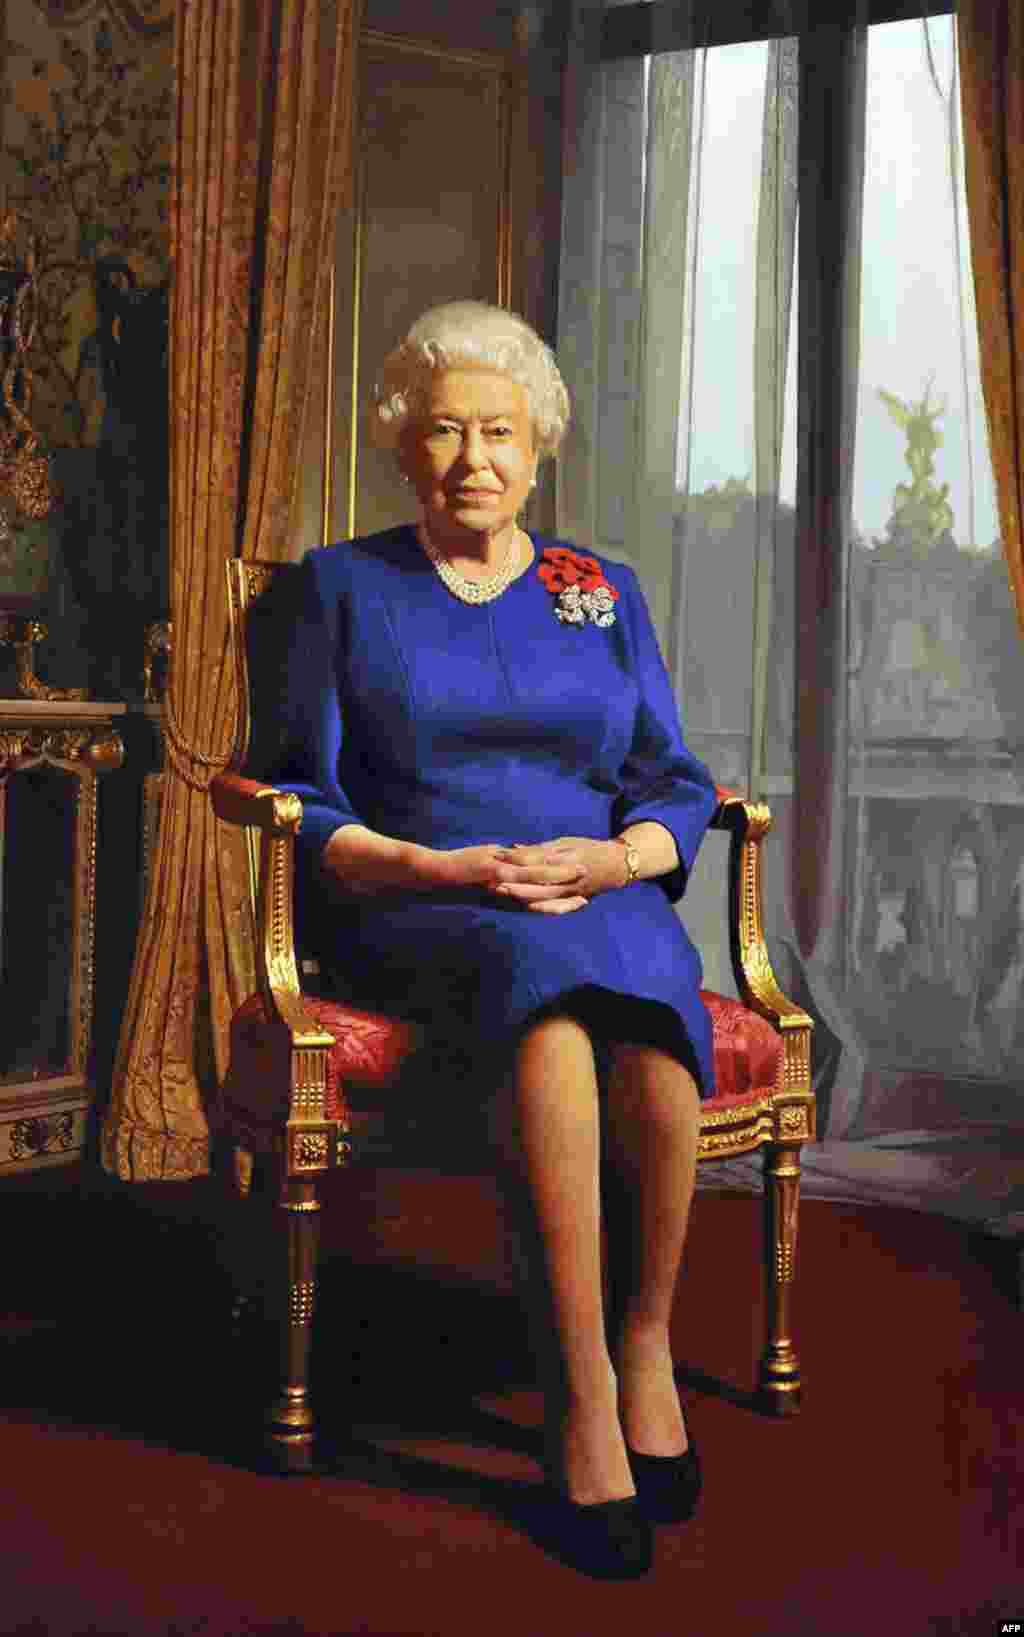 Chân dung mới của nữ hoàng, do họa sĩ Darren Baker thực hiện, được trưng bày ở London, tháng 9, 2011. (Reuters)